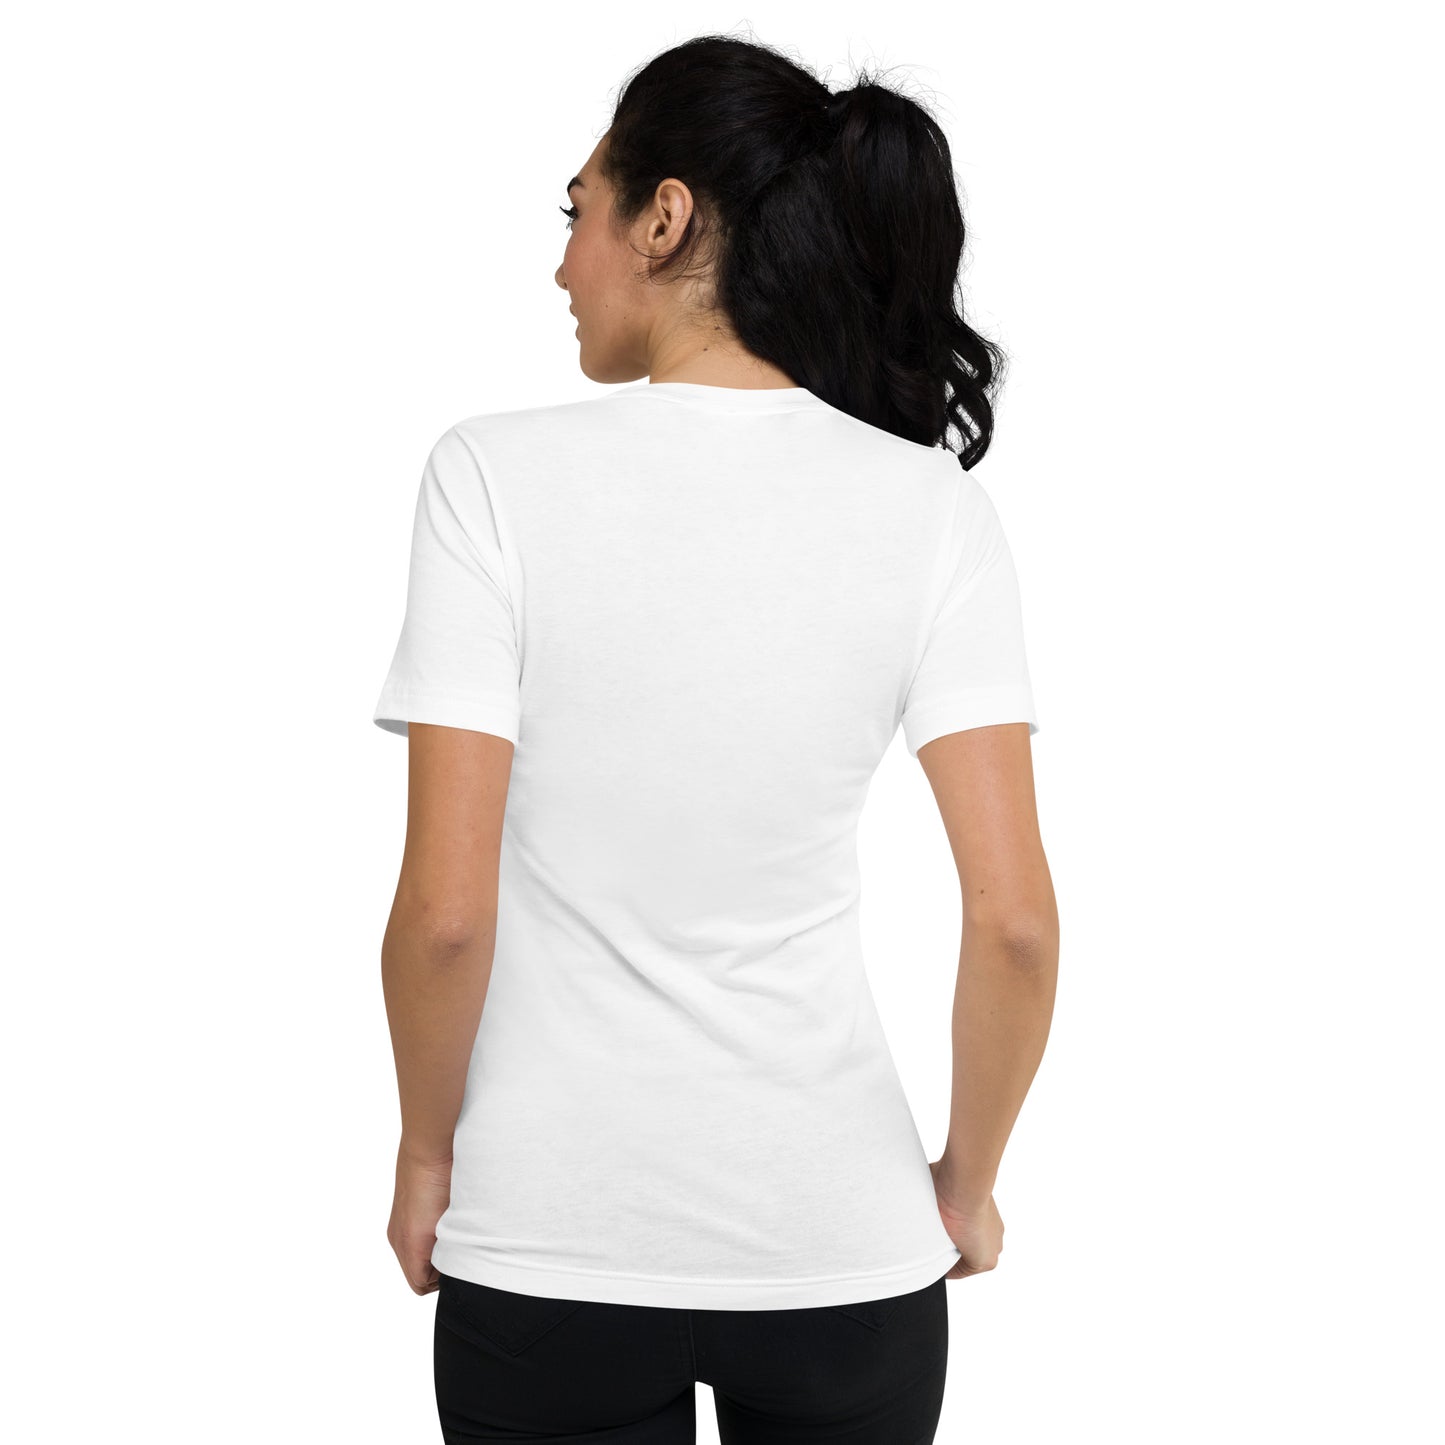 BELLAロゴ刺繍 ユニセックス 半袖VネックTシャツ